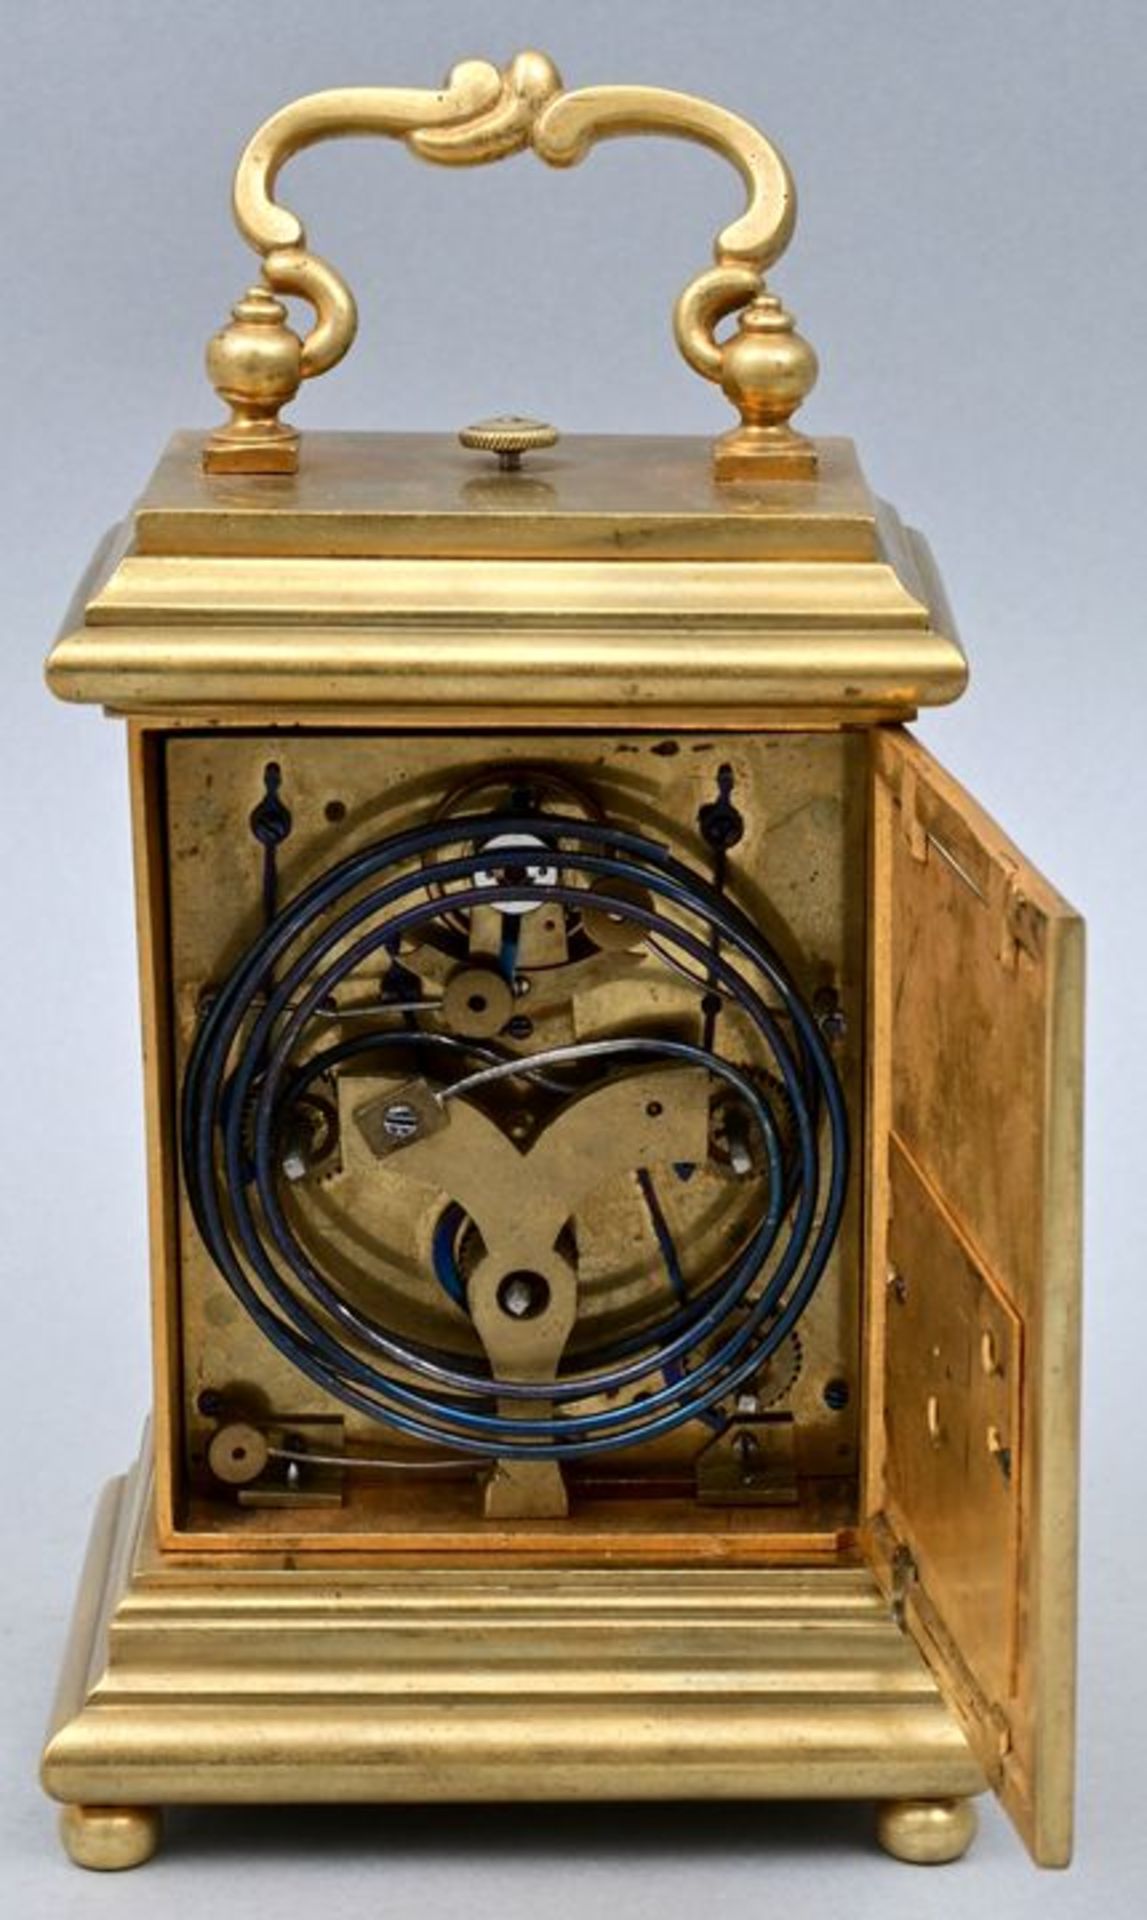 Reiseuhr Anton Liszt Wien / Travel clock - Bild 2 aus 5